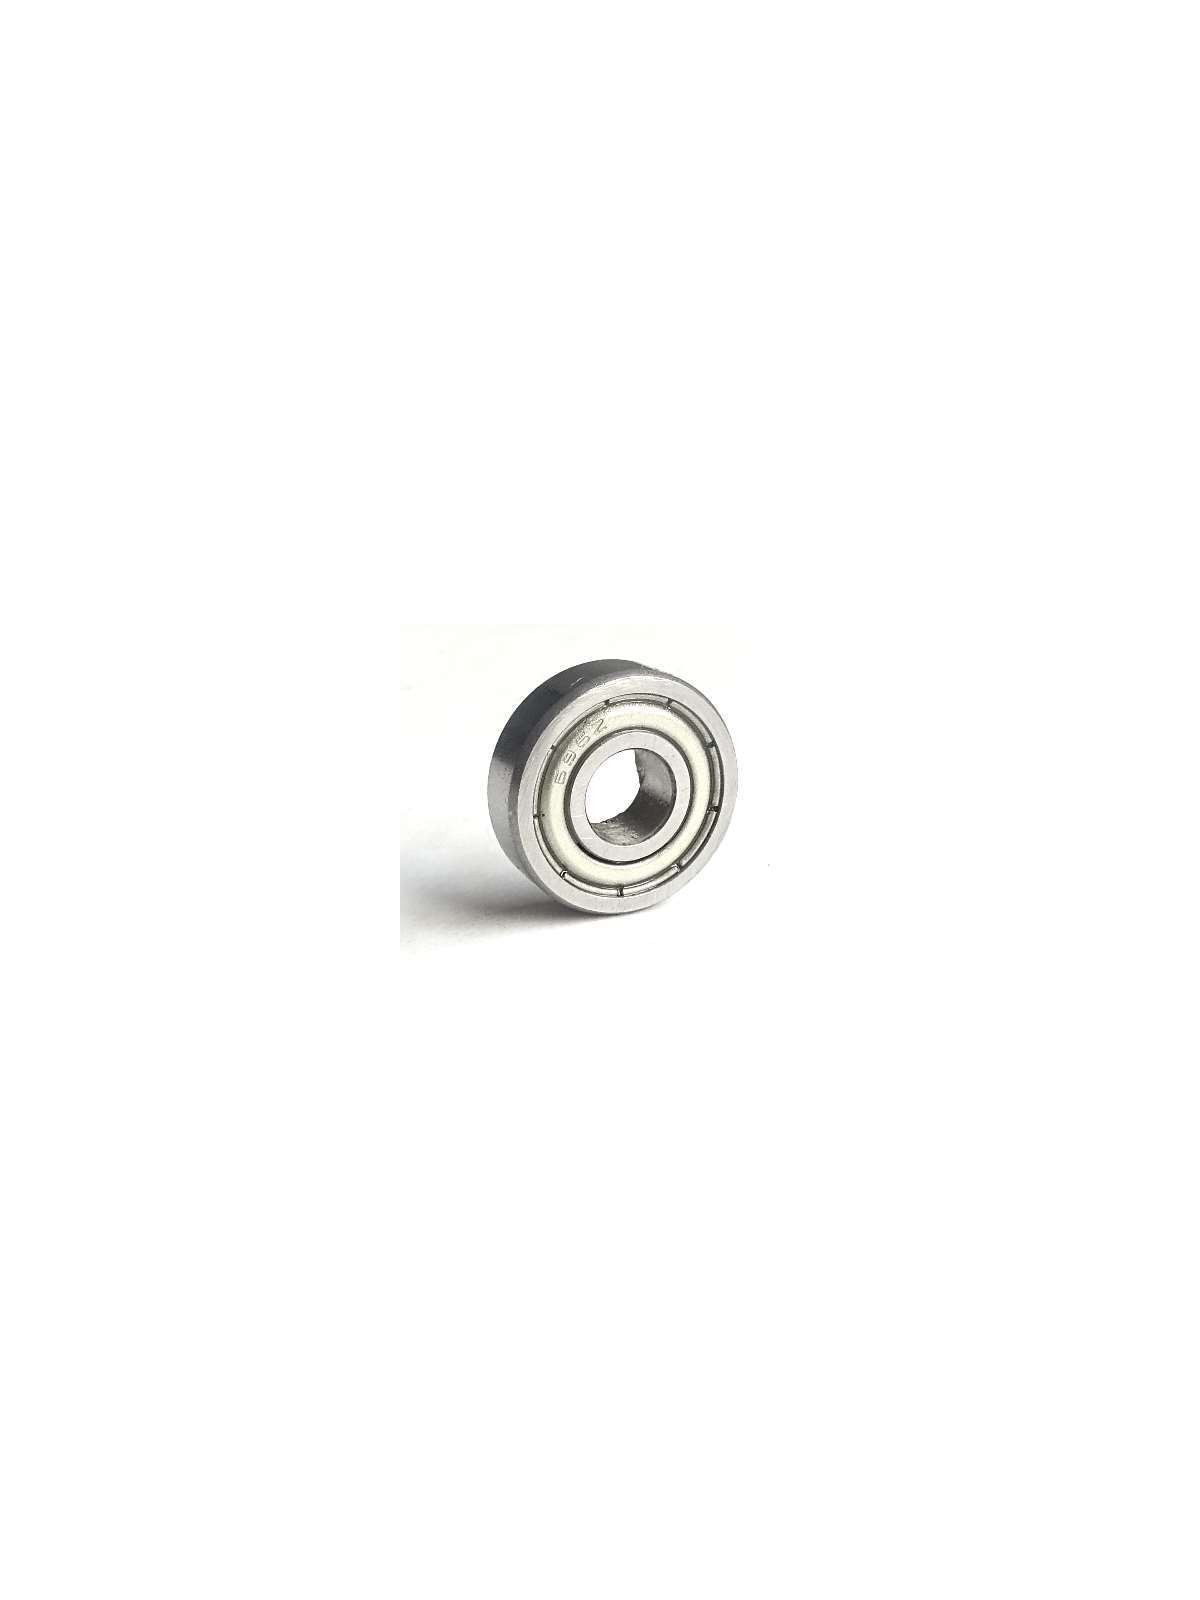  696A ZZ / MR1660-ZZ Ball bearing 6 x 16 x 5 mm | JVL-Europe